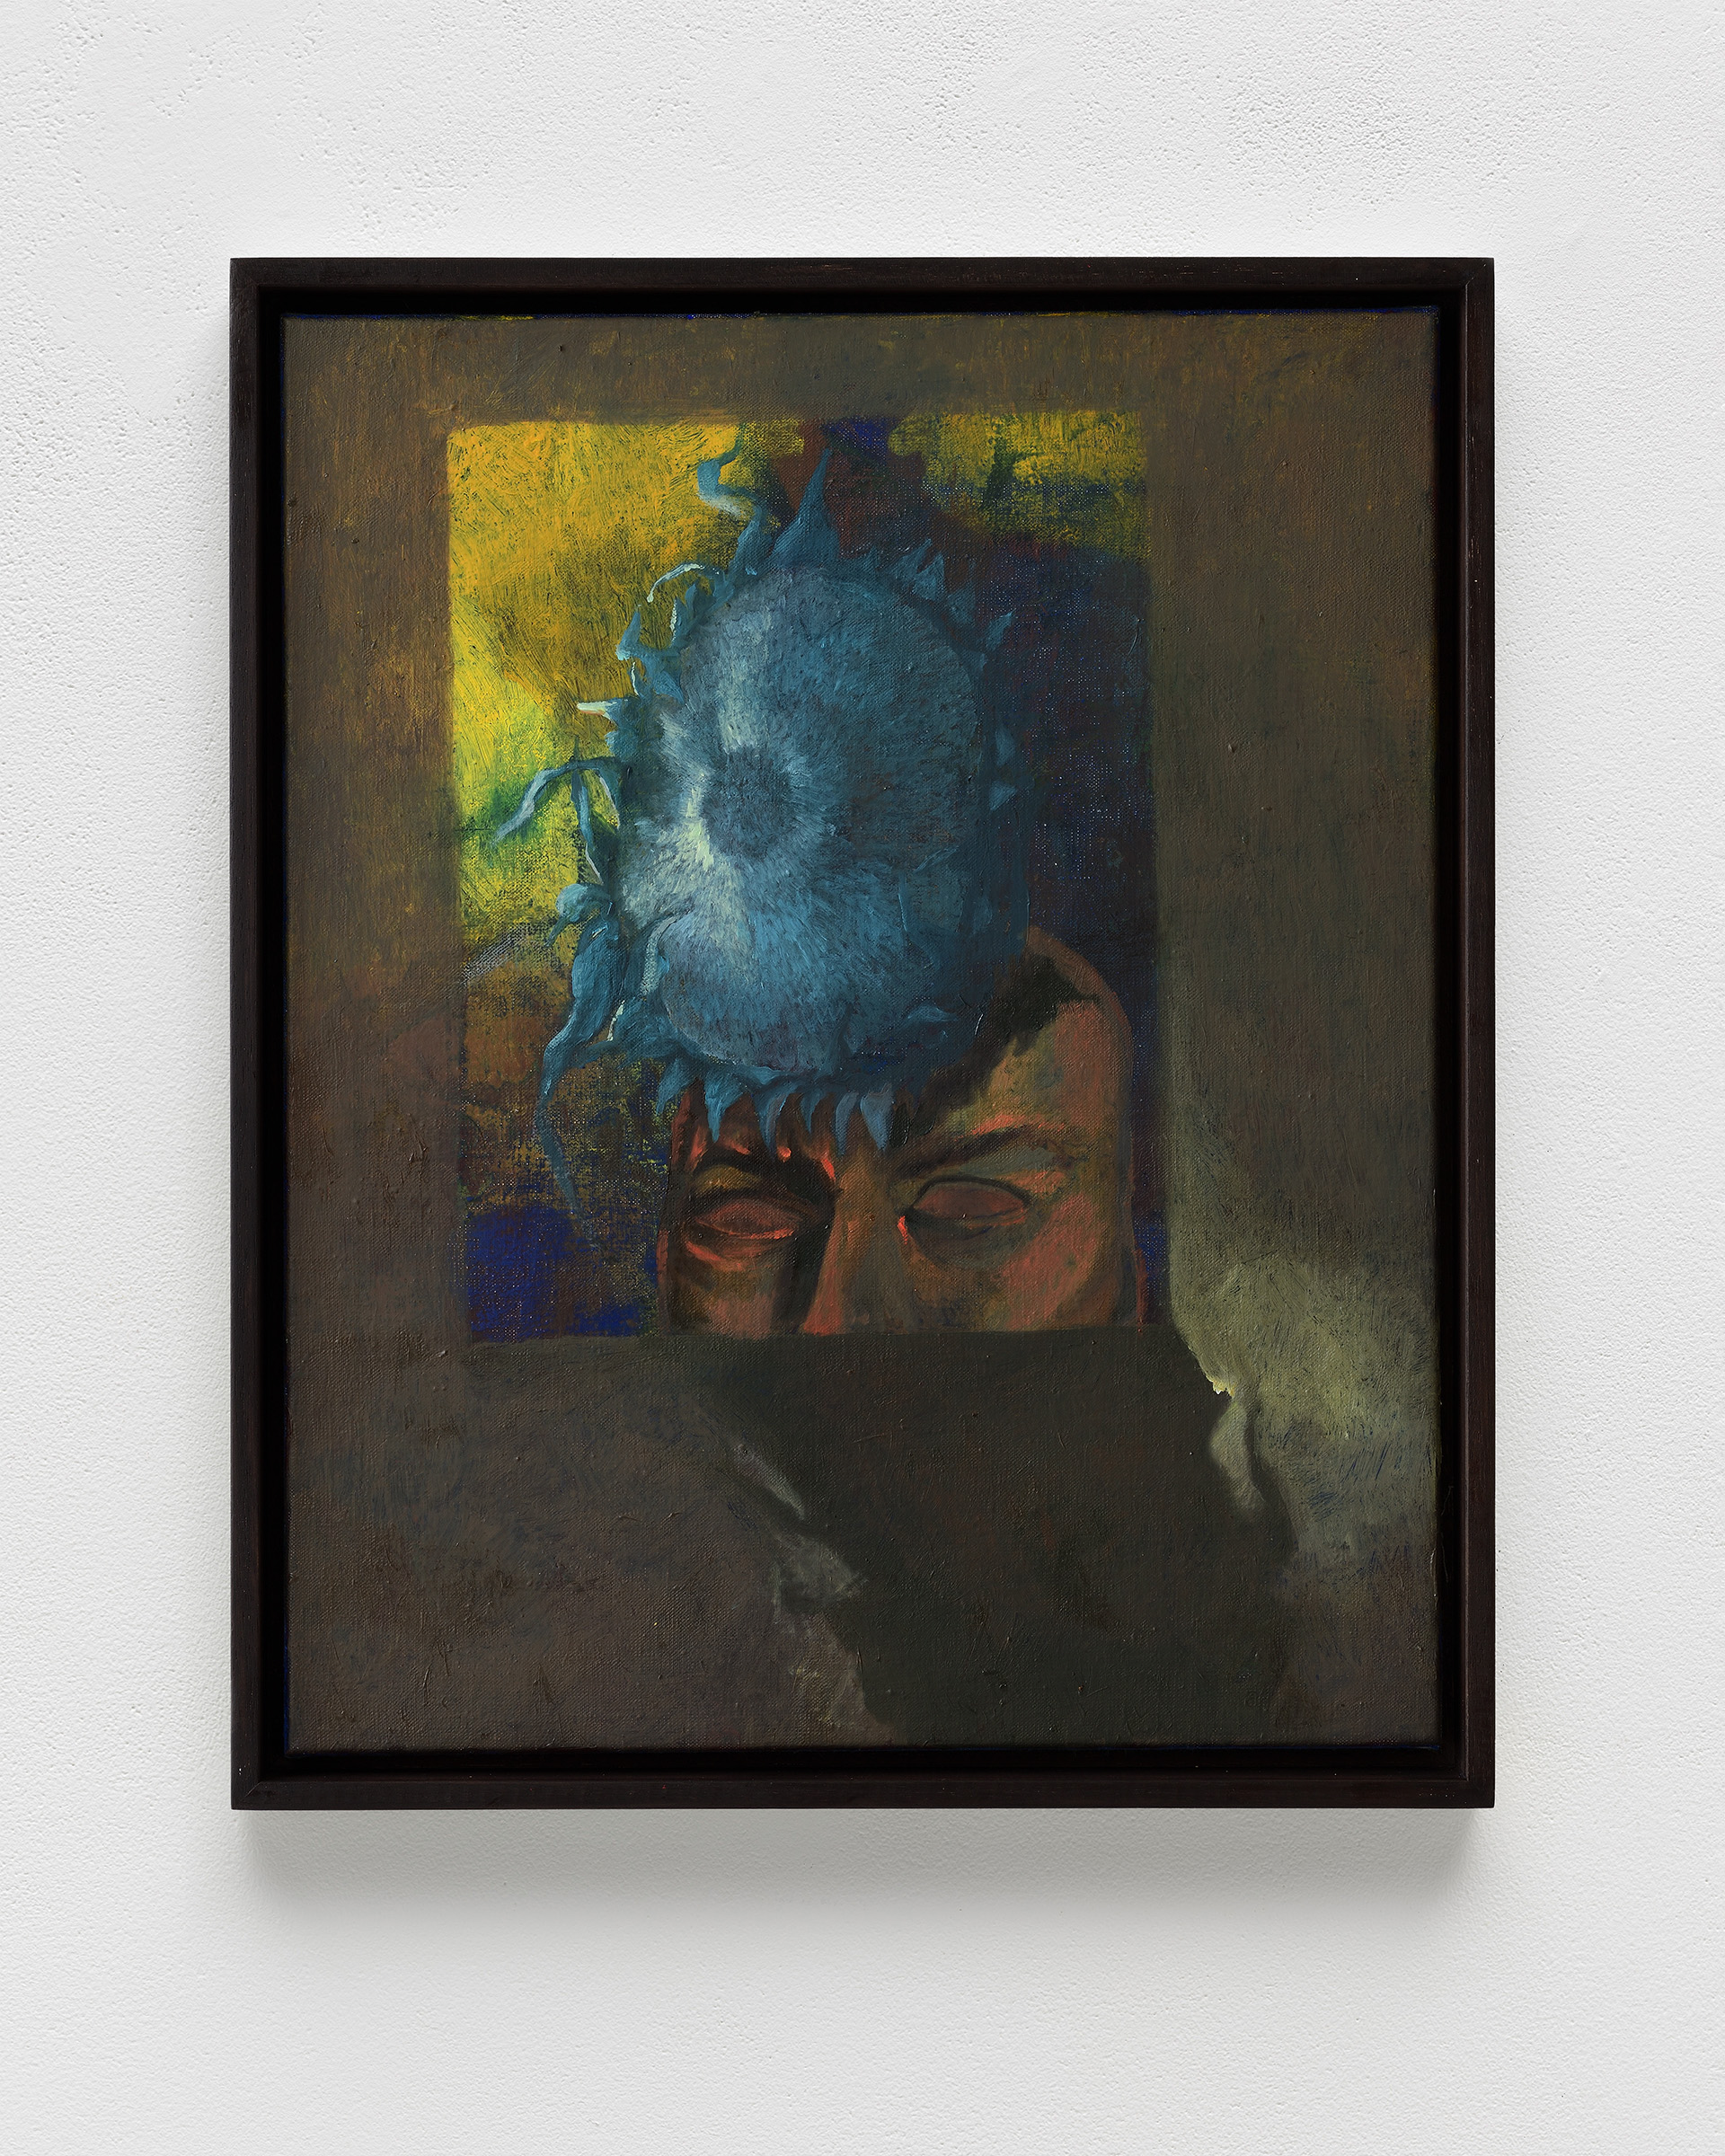 Alessandro Fogo, Sunflower mask, 2023, oil on linen, 50 x 40 cm, 19 3/4 x 15 3/4 in.